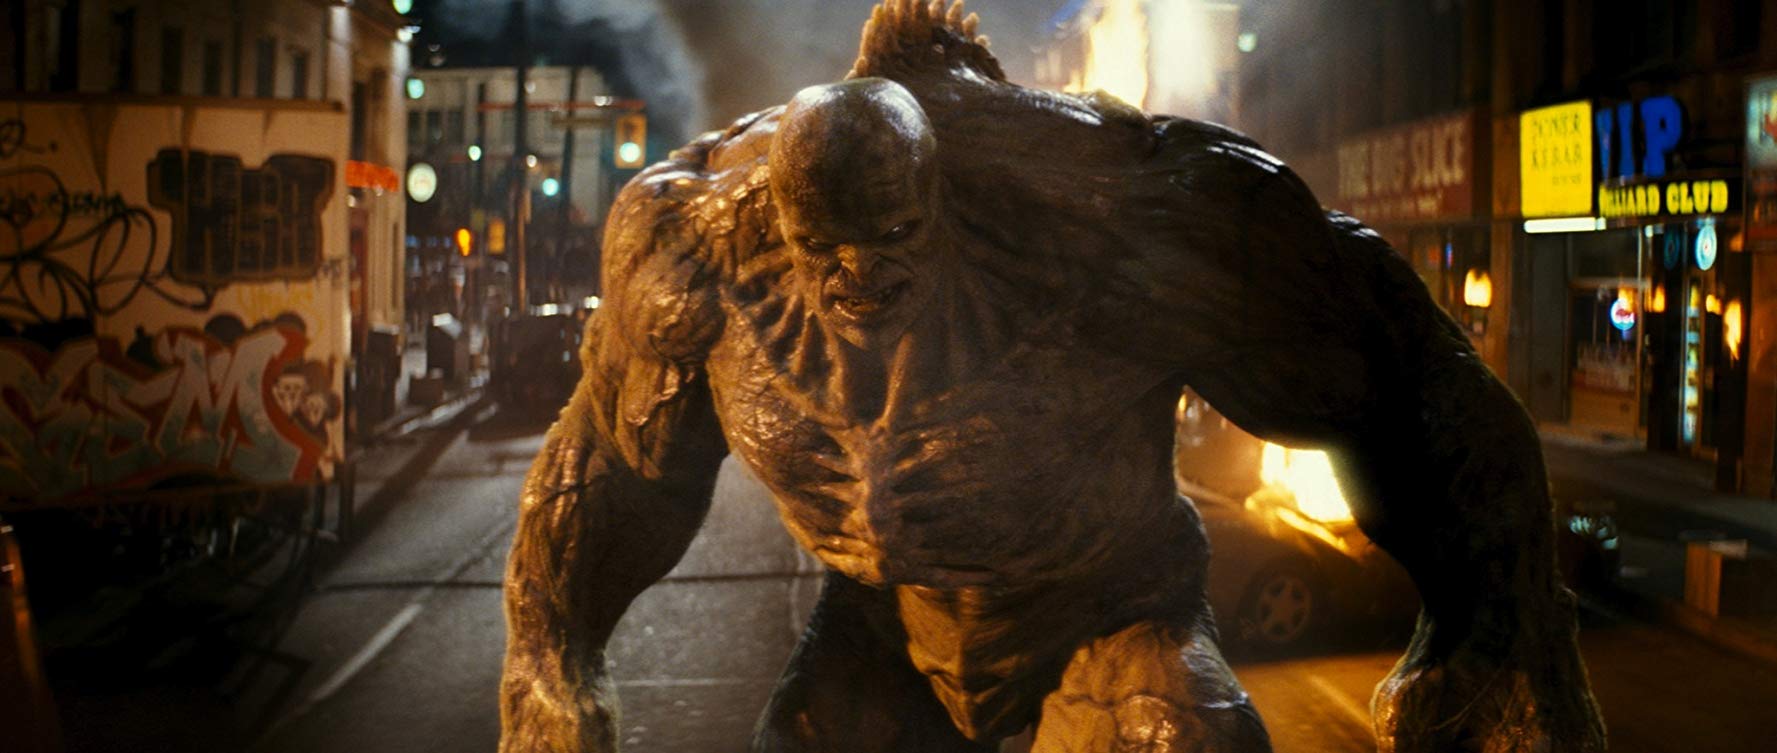 Hulk Villanos Ranqueados: Los 10 peores estandartes de Bruce jamás vistos 8